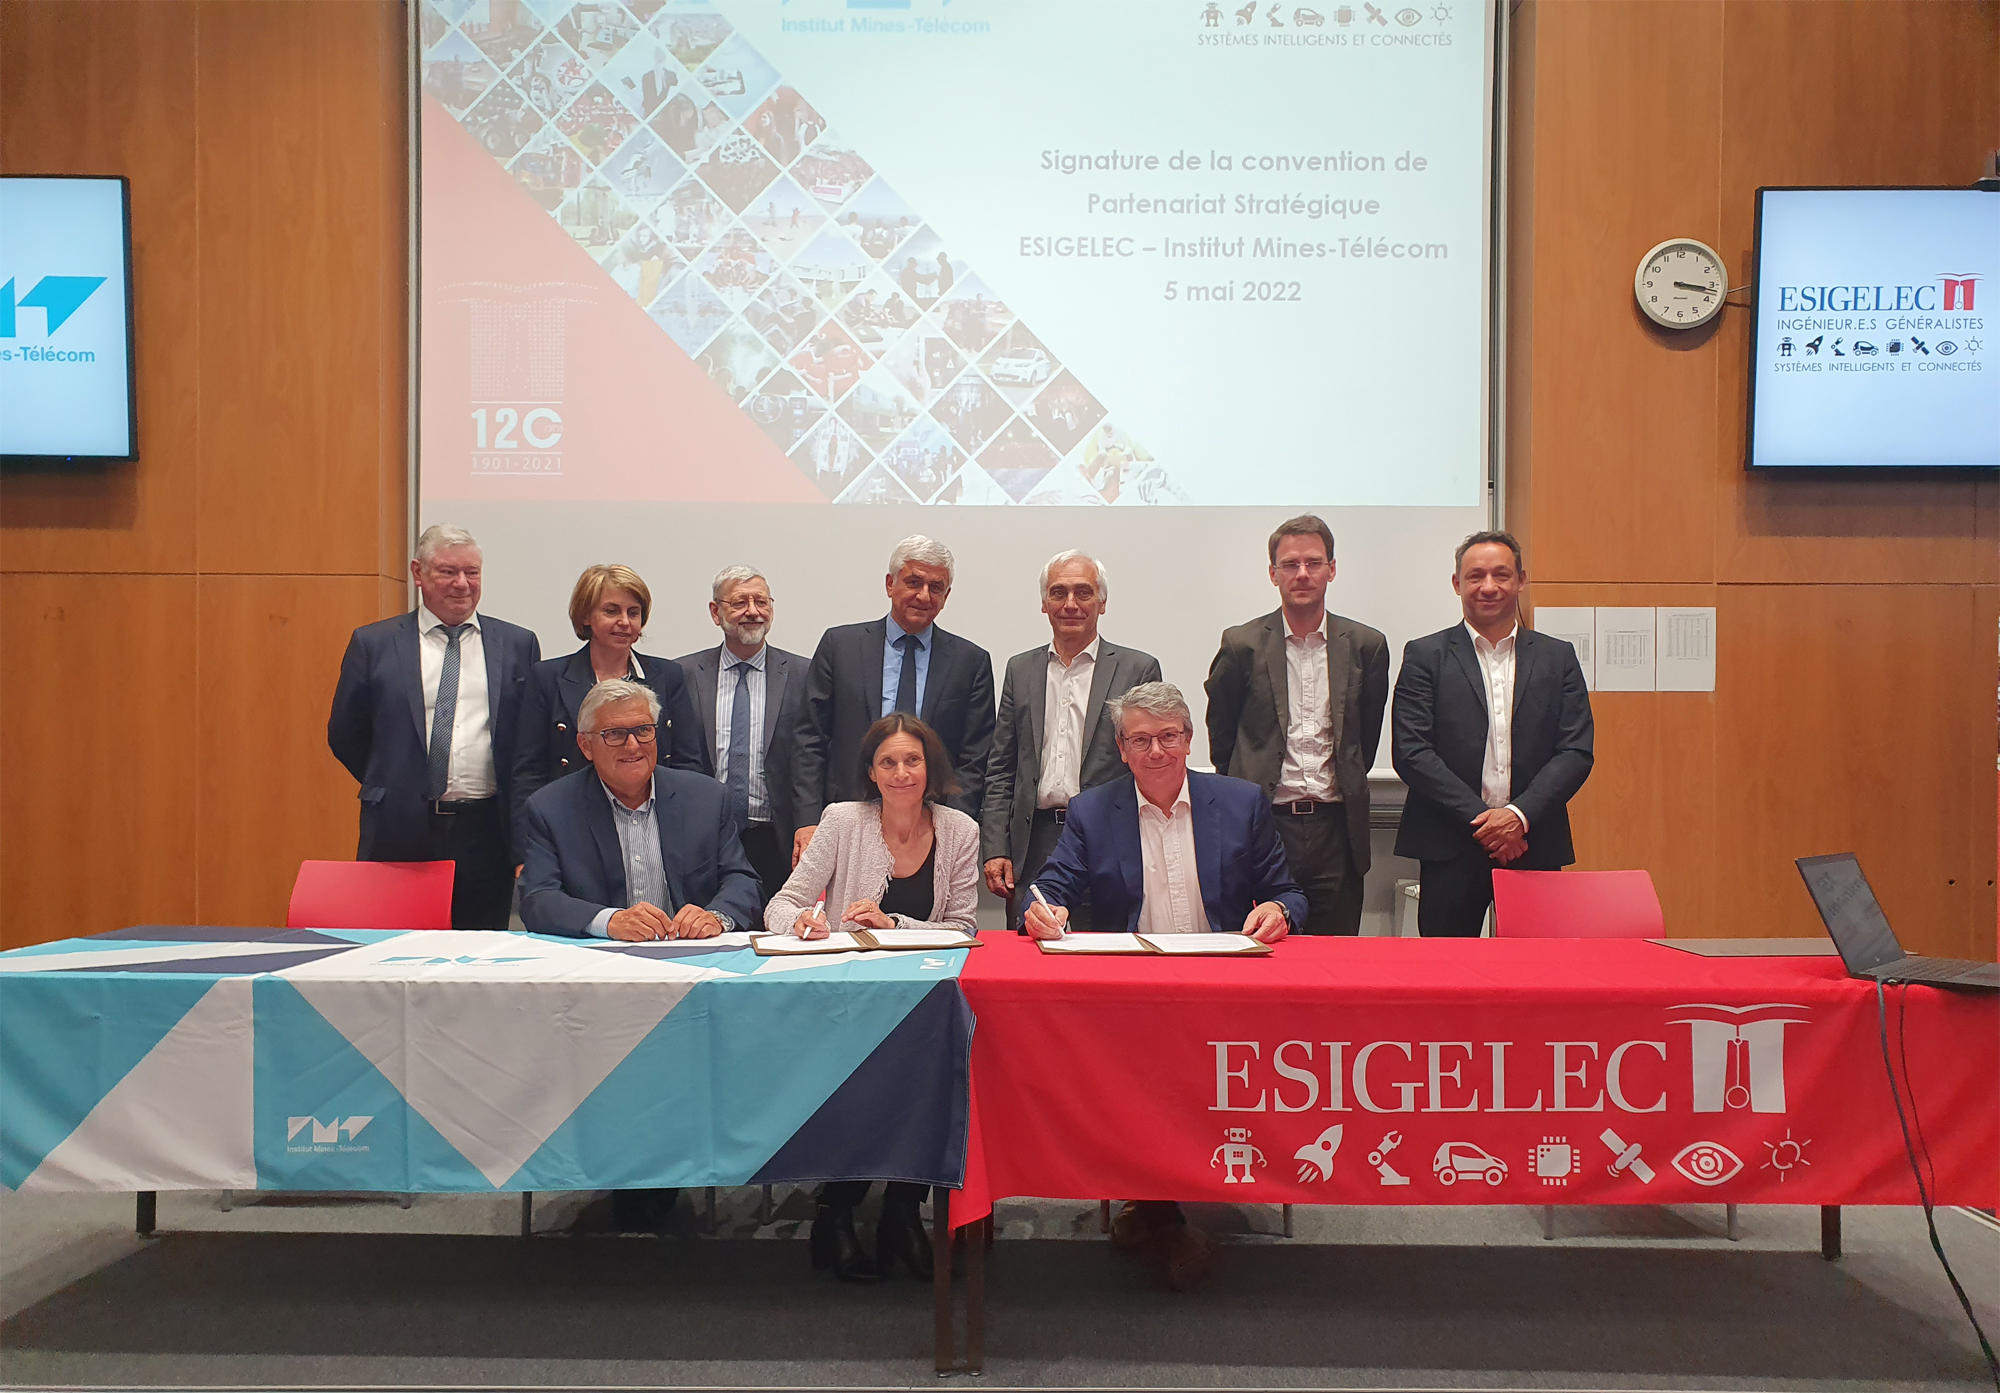 Convention de partenariat stratégique entre l’ESIGELEC et l’Institut MINES-TELECOM